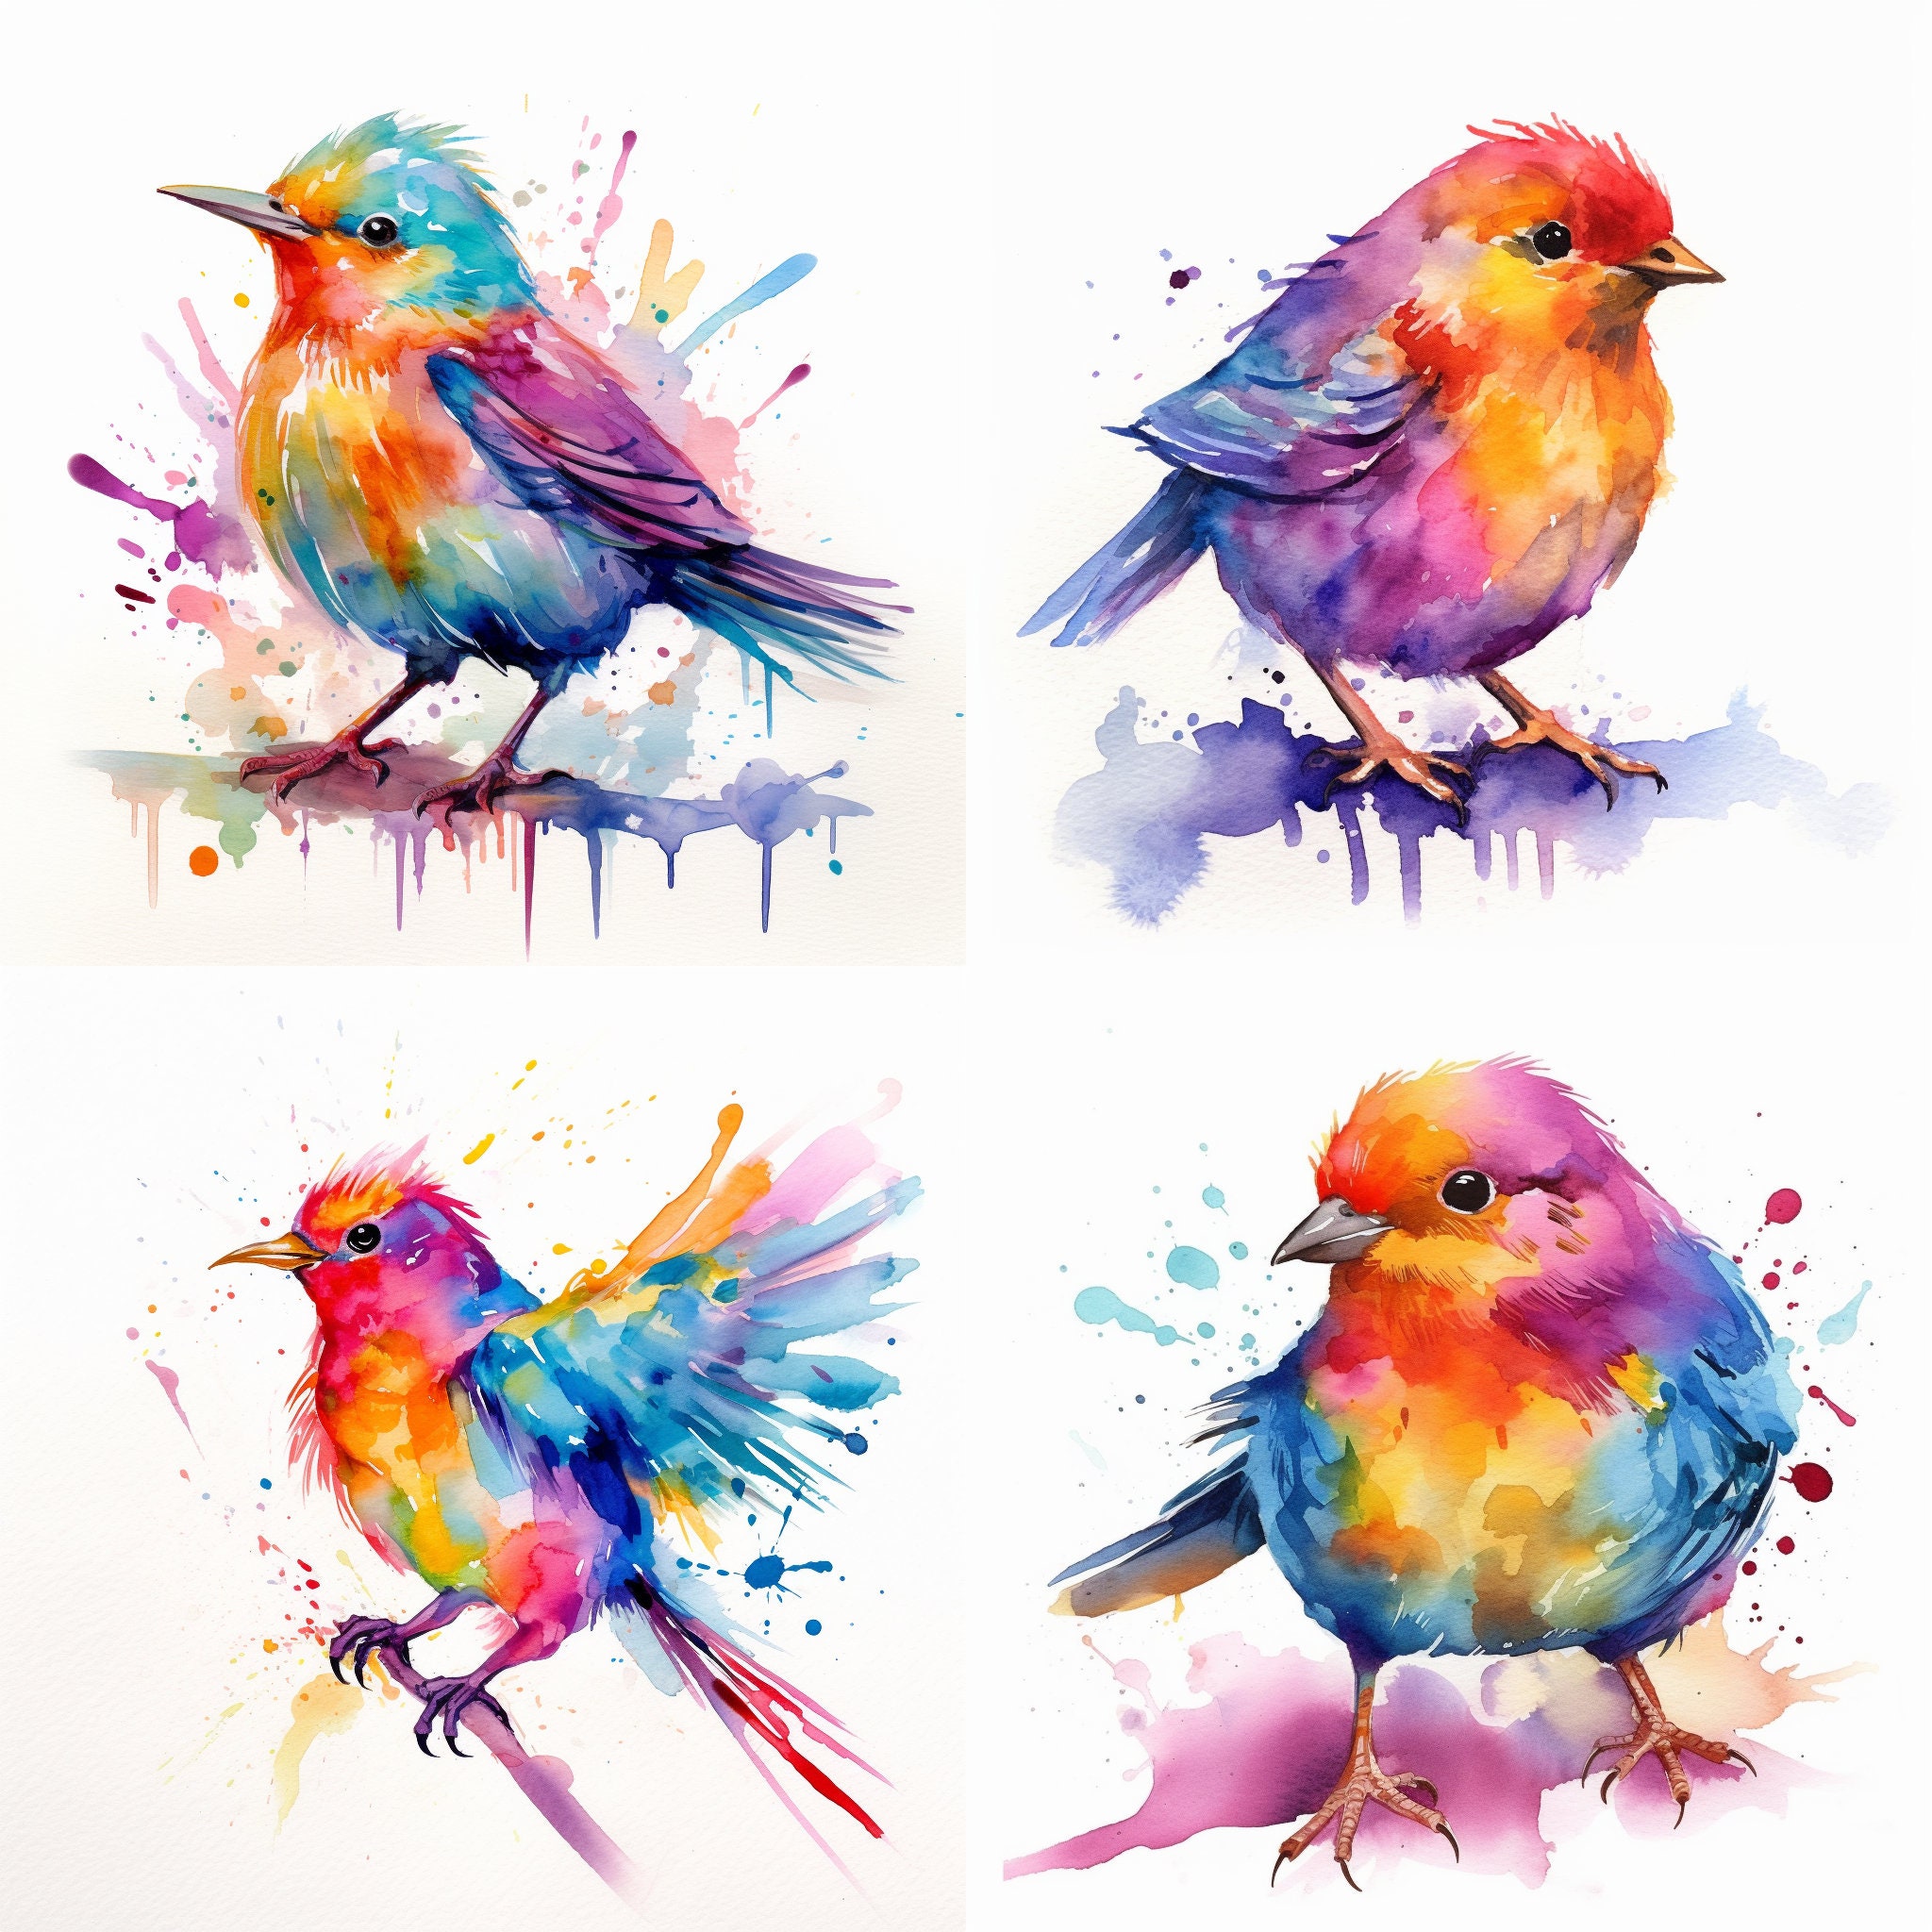 Generic Peaceable Kingdom Sticker Crafts Beautiful Birds Foil Art